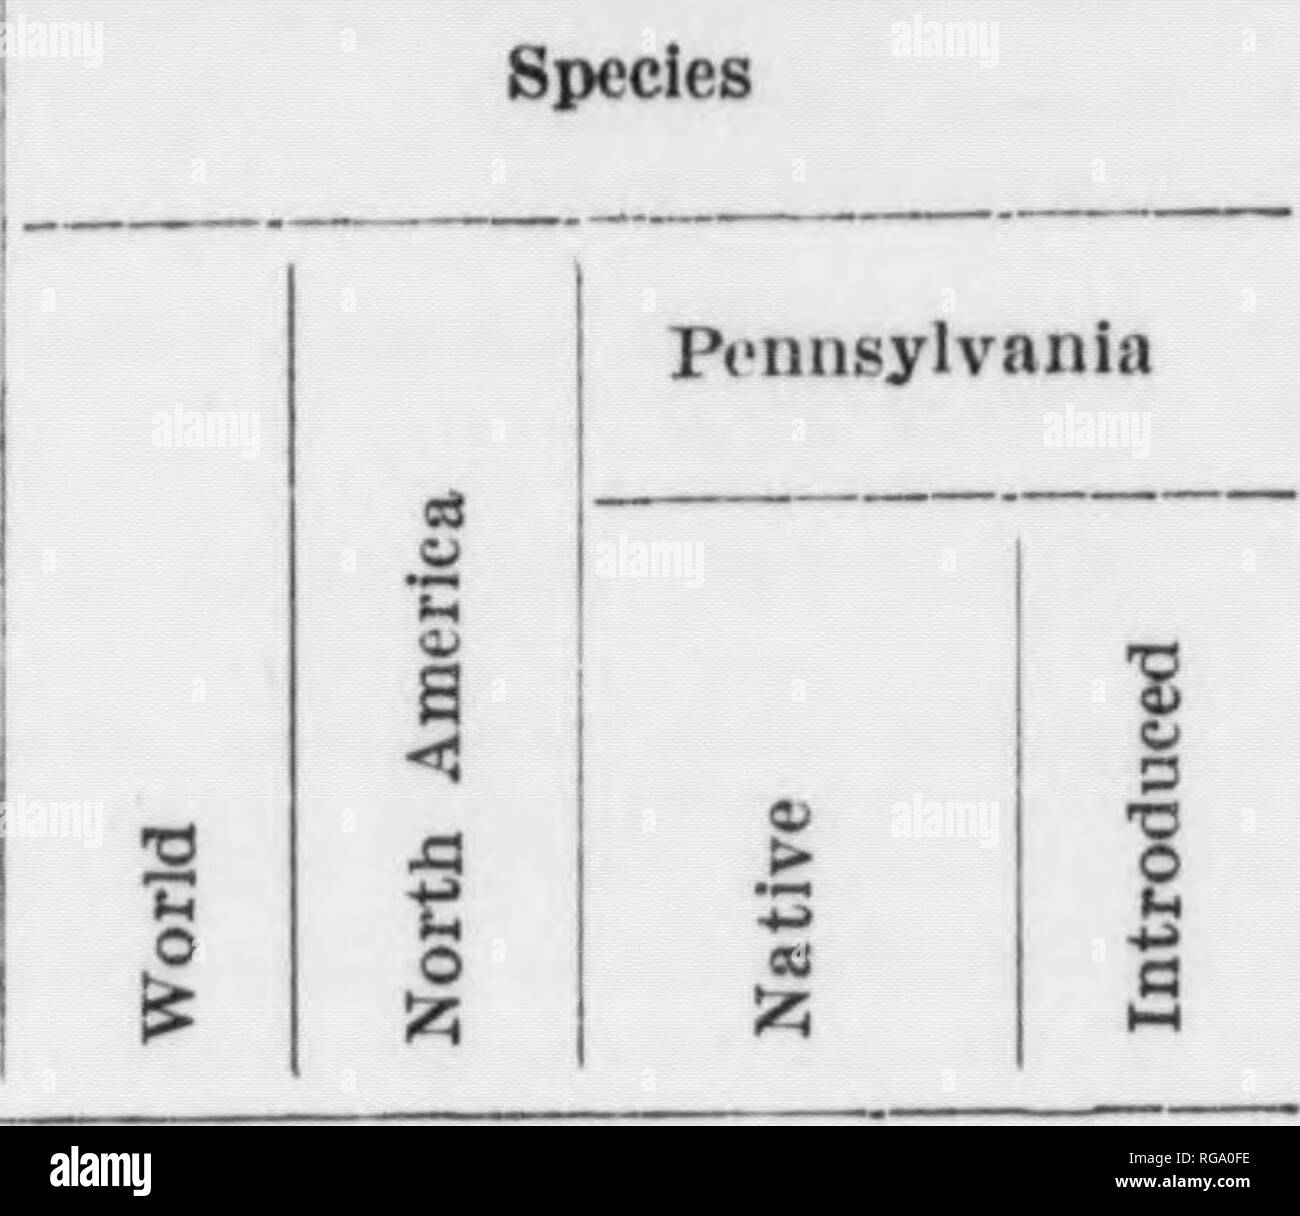 . Bulletin (Pennsylvania Department of Forestry), no. 11. Forests and forestry. 72 TABULATION OF TREE GENERA AND TREE SPECIESâContinued Families, Genera, etc. Species. Pam. VII. Magnoliaceae. Gen. 91). MHgnolitt. - 26 Gen. 26. Liriodendron - - *â Pam. VIII. Auonaceae. Gen. 27. Asimina, * Fam. IX. Lauraceae. Gen. 28. Sassafras, - * Fam. X. Hamameiidacejn'. Gen, 29. Hamamelis, â * Gen. 30. Liquidanibar, - * Fam. XI. Platanaceae. Gen. 31. Platanus, Â« Fam. XII. Rosaceae. Gen. 32. Pyrus, ^ Gen. 33. Amelanchier, 30 Gen. 34. Crataegus, -- - -- Tw Gen. 35. Prunus, - Â»&quot; Fam. XIII. Leguminosac. G Stock Photo